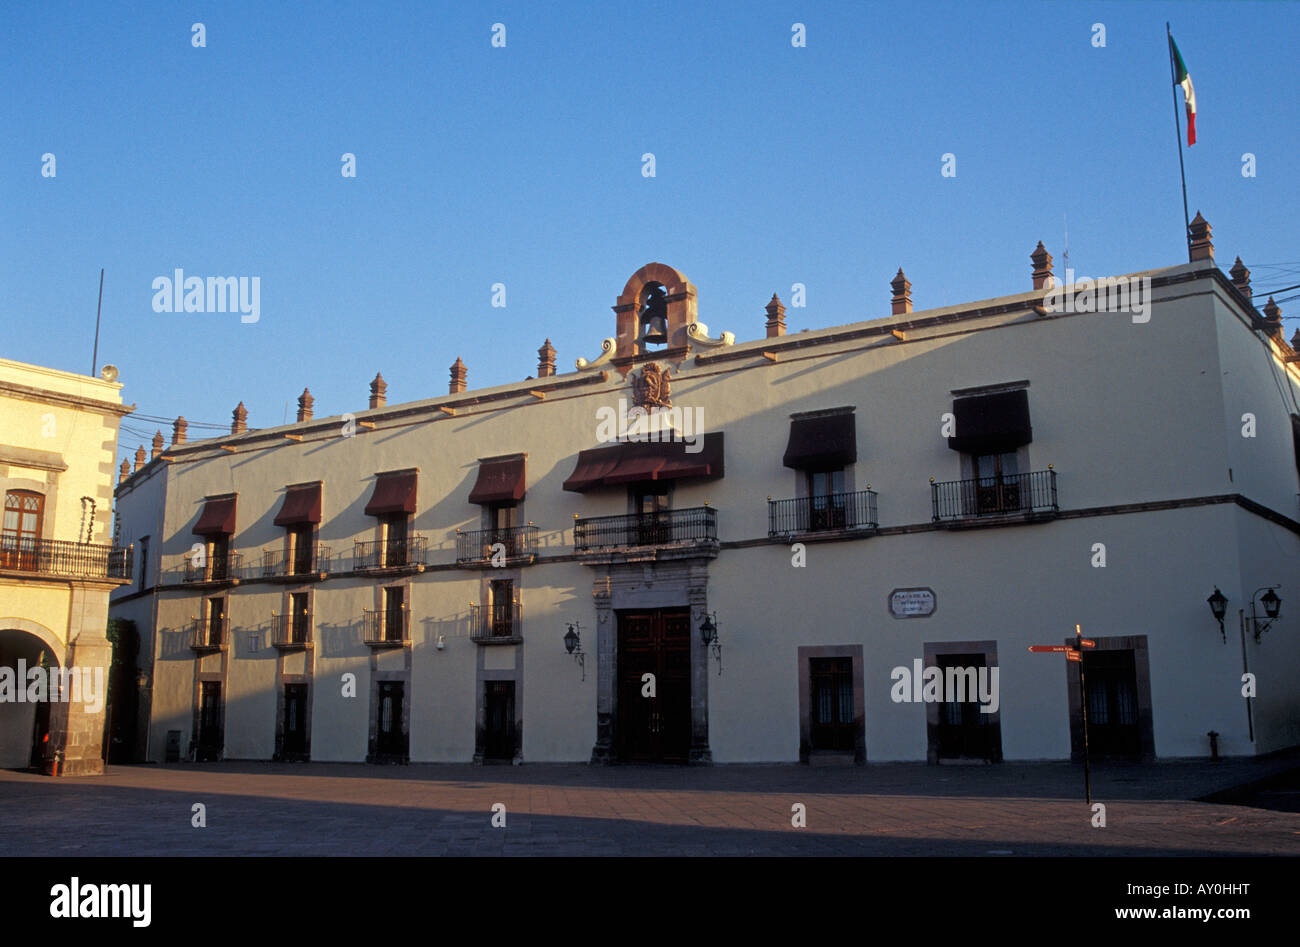 The Palacio de Gobierno or Casa de la Corregidora in the city of Querétaro, Mexico Stock Photo